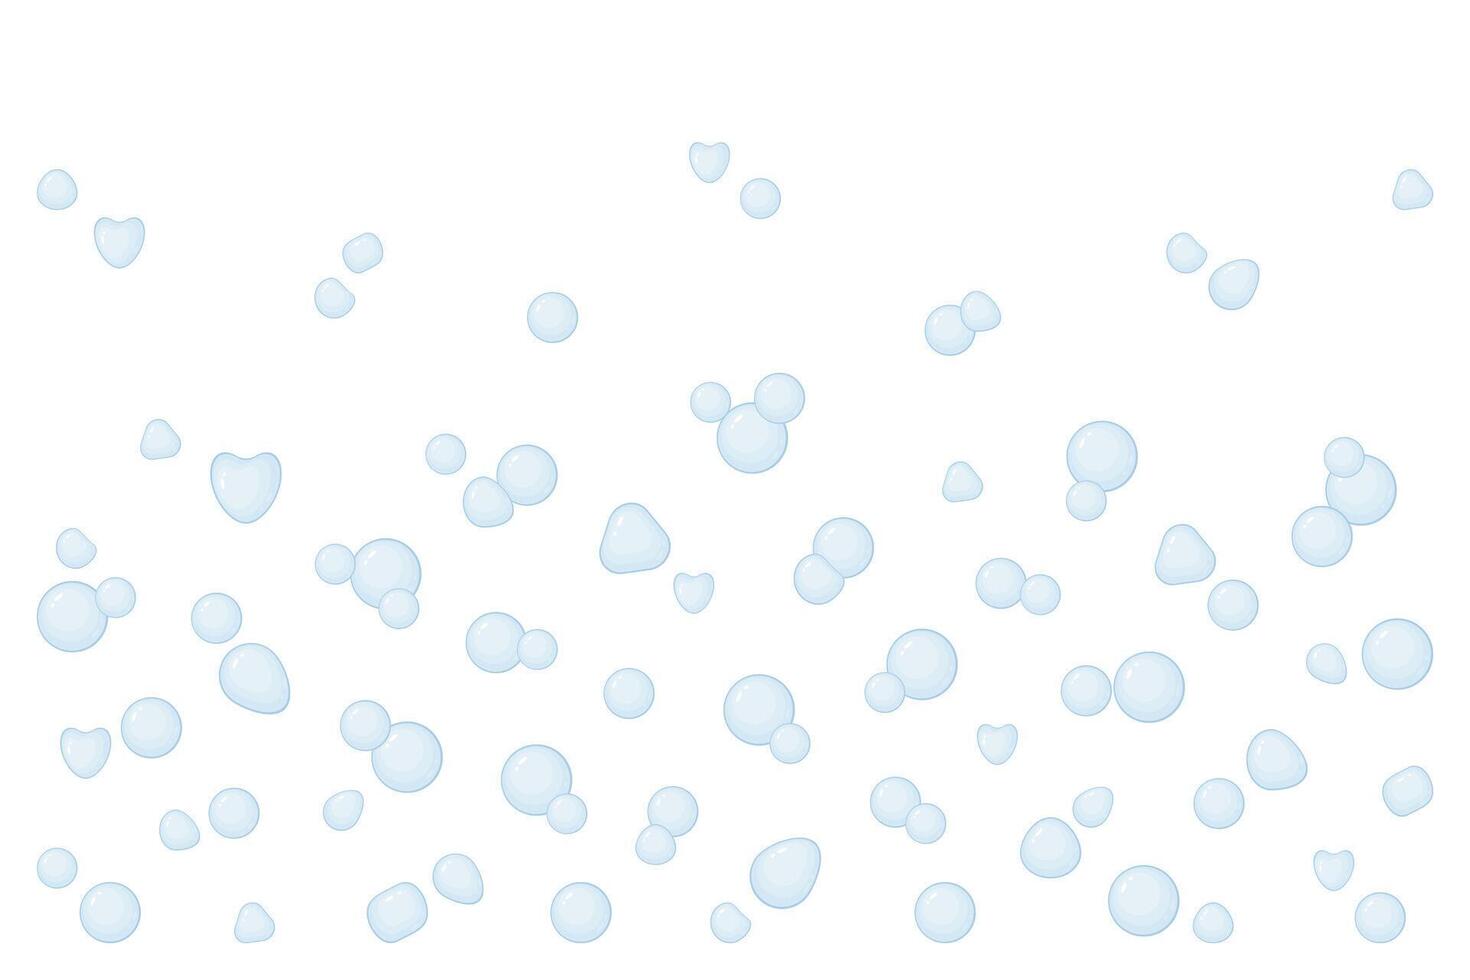 achtergrond met zeep bubbels. vector